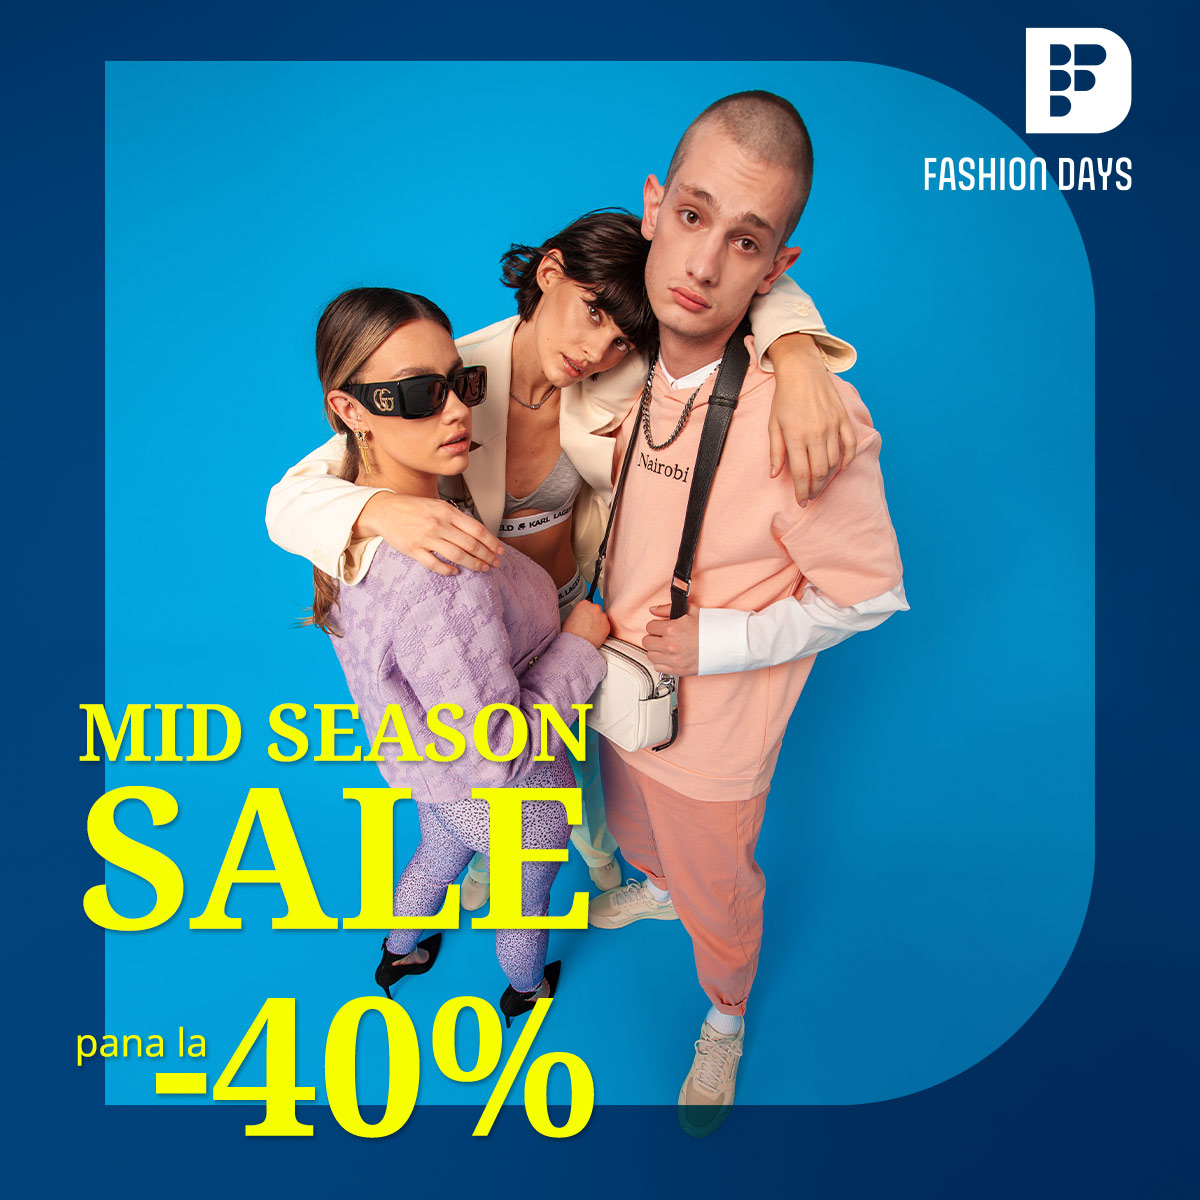 Mid Season Sale - pana la - 40%